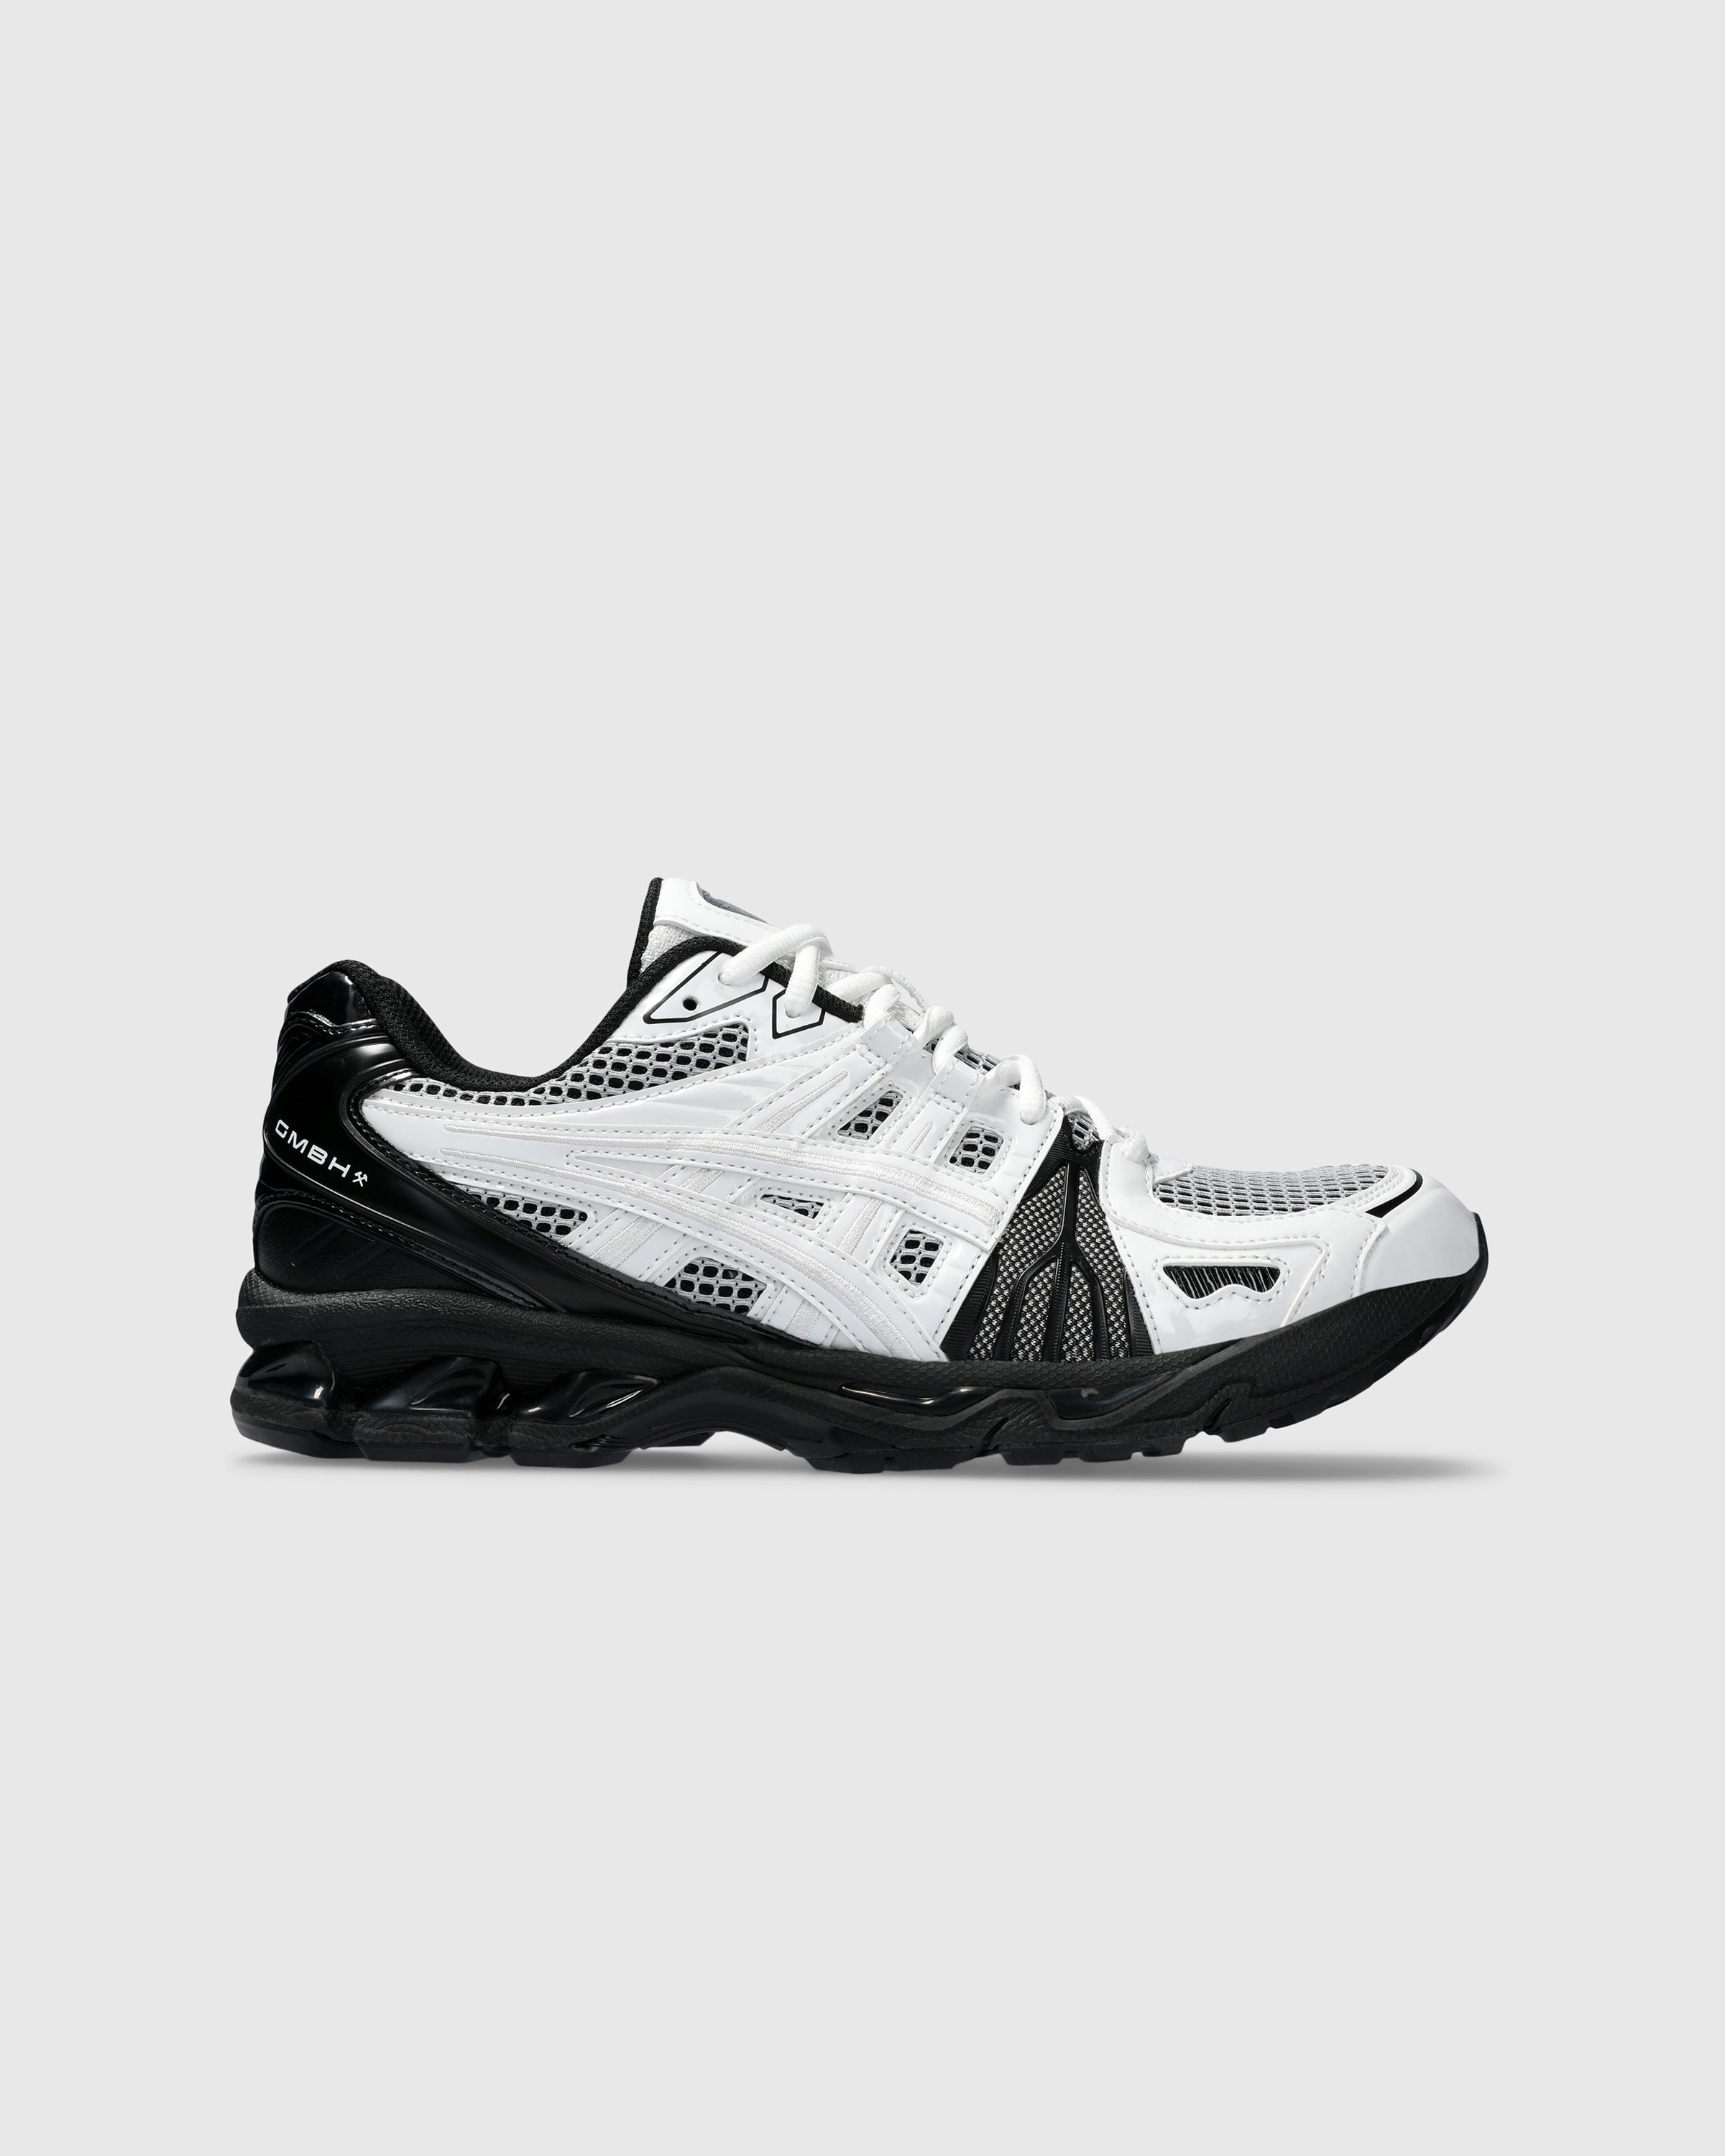 asics x GmbH – GEL-KAYANO LEGACY White/Black - Sneakers - Multi - Image 1